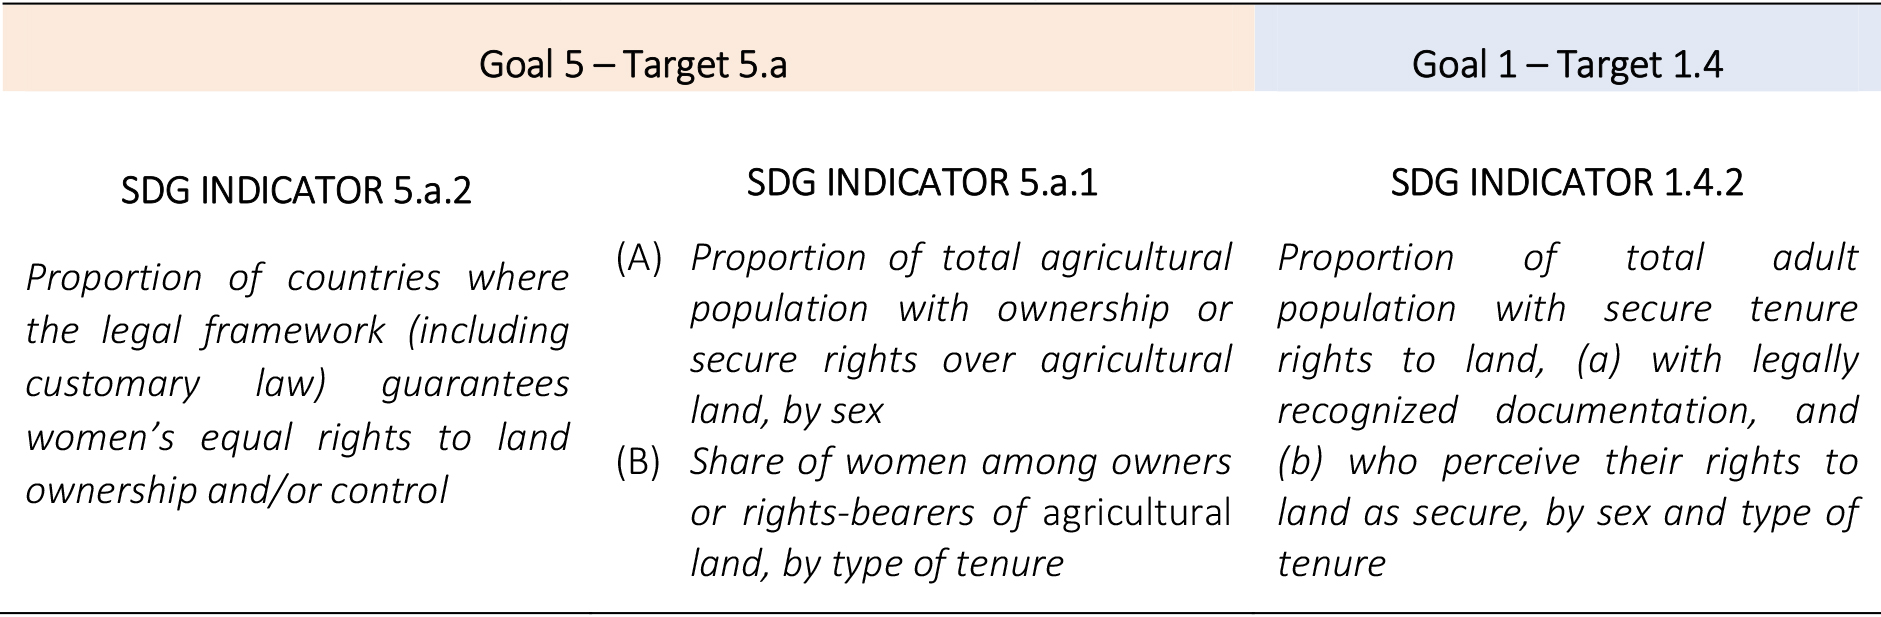 SDG Indicators monitoring individual and women’s land rights.